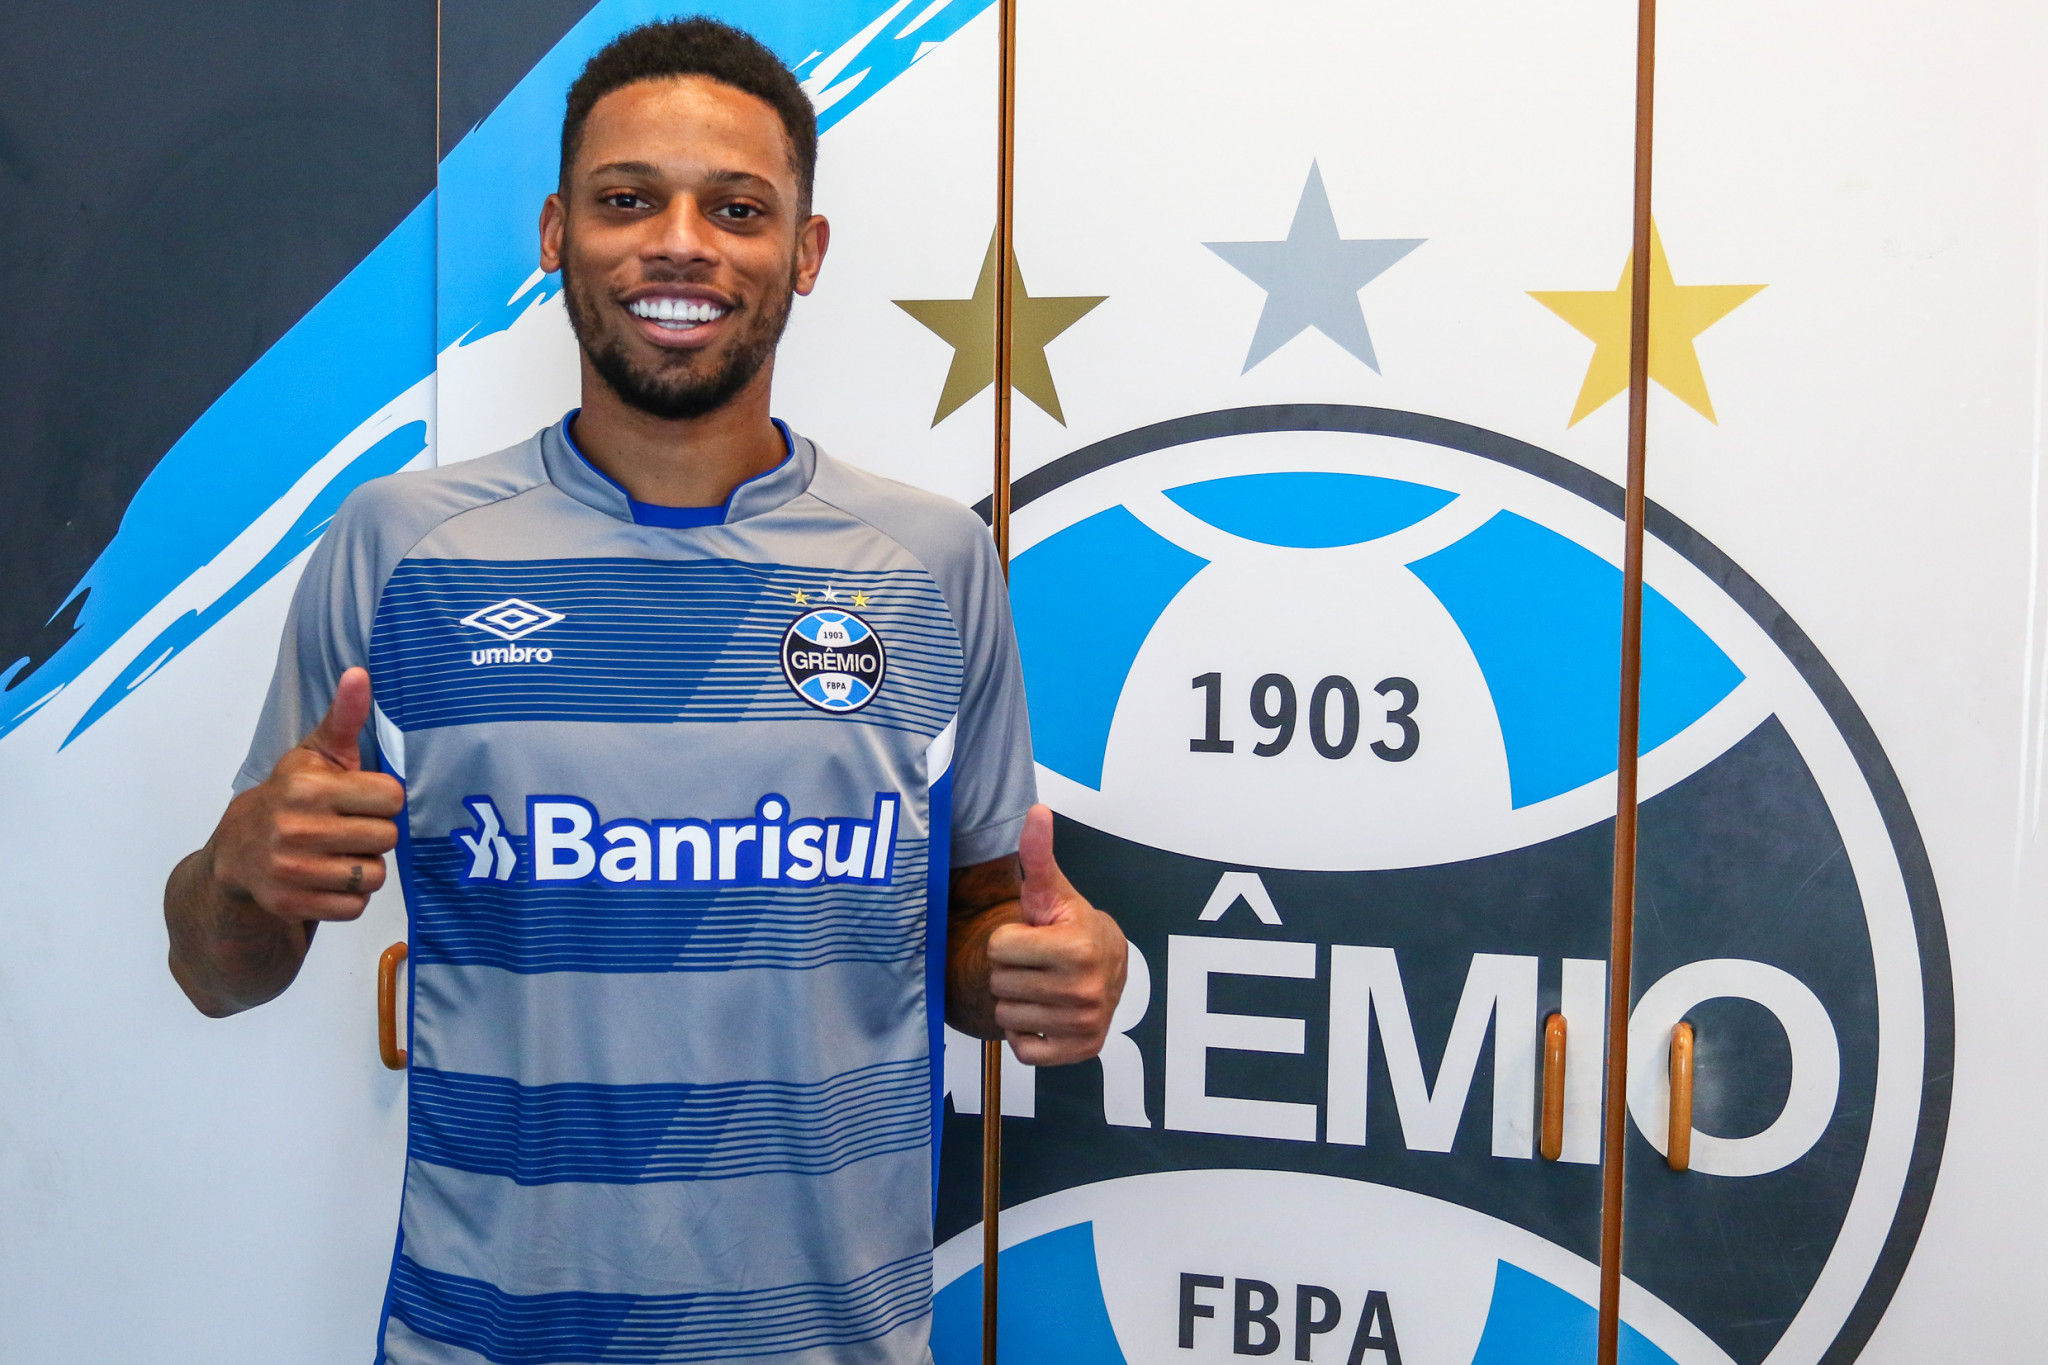 André assina com o Grêmio